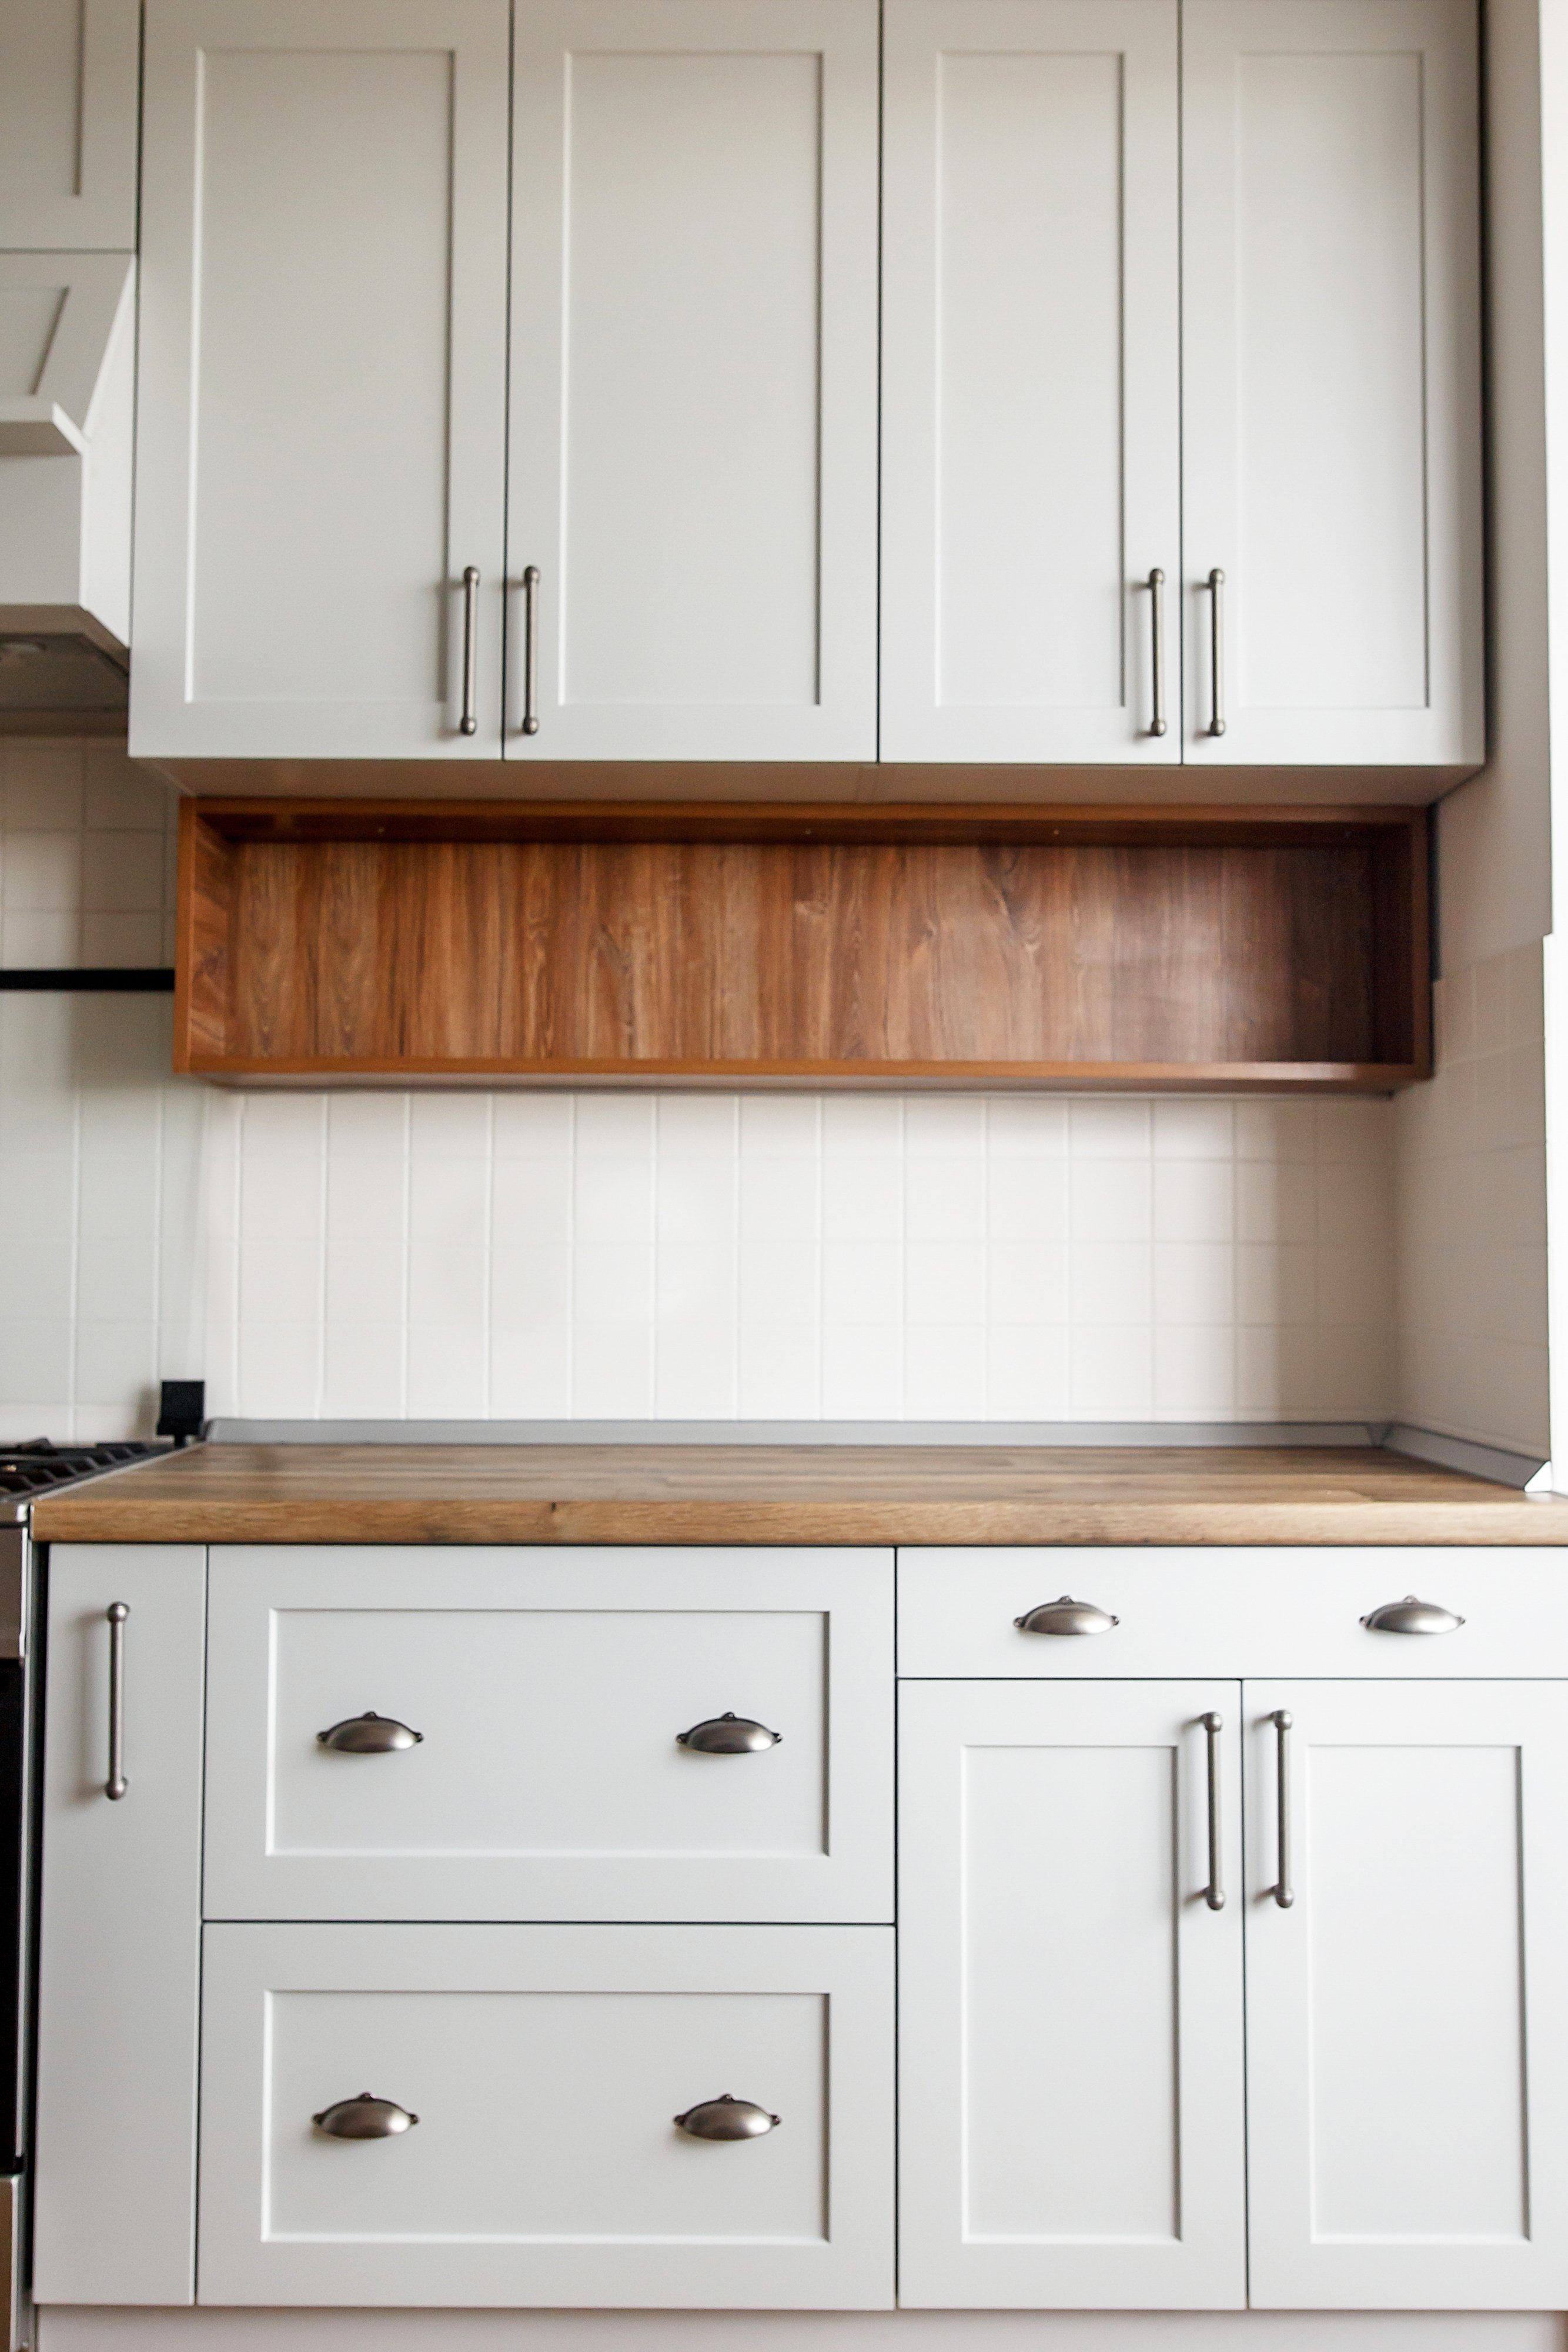  Kitchen Cabinet Hardware Ideas: Style- Kitchen Cabinet Designs